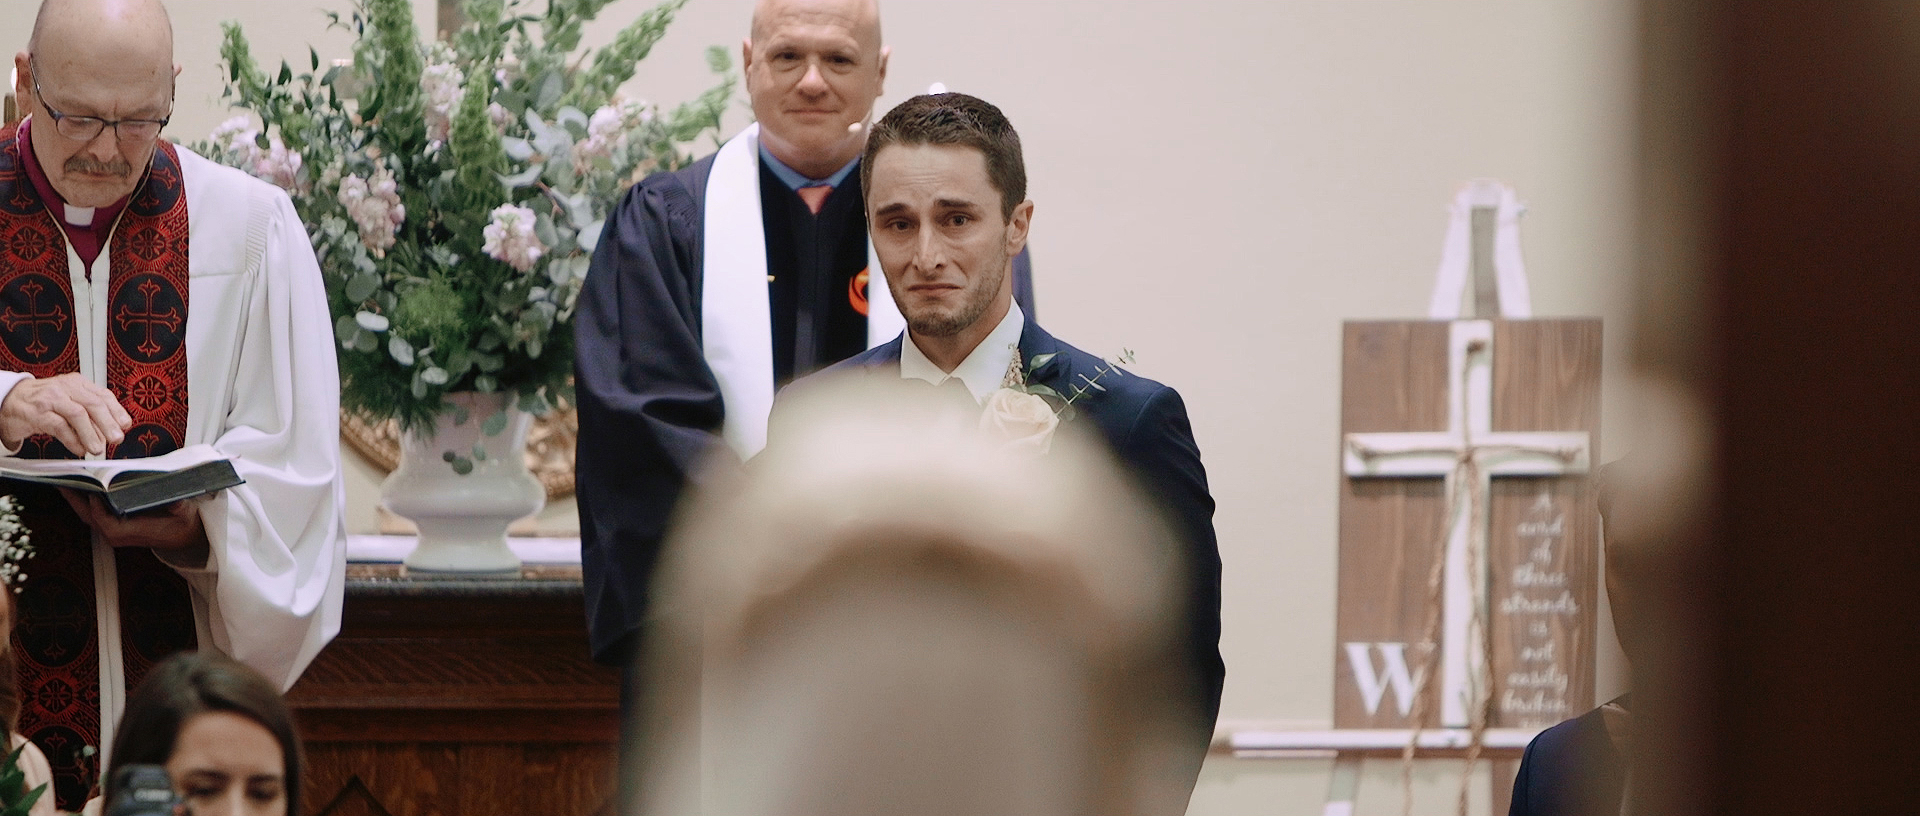 amazing-groom-reaction-wedding-video